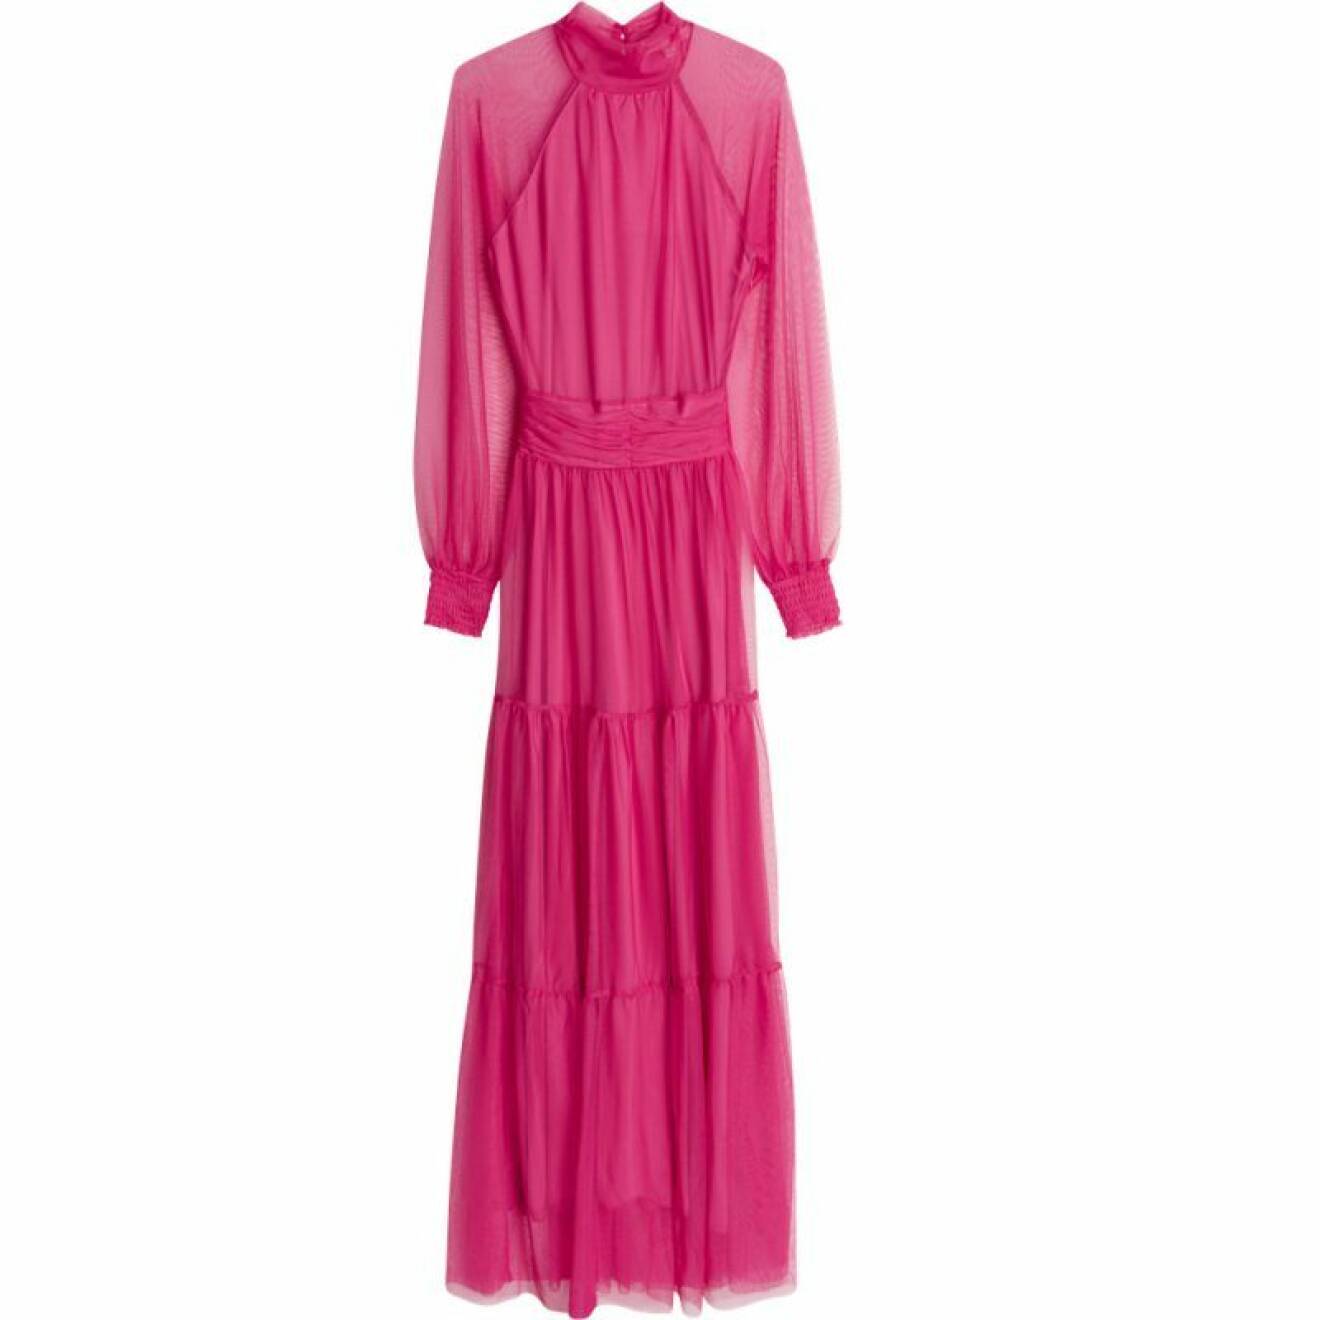 Rosa långklänning från gina tricot